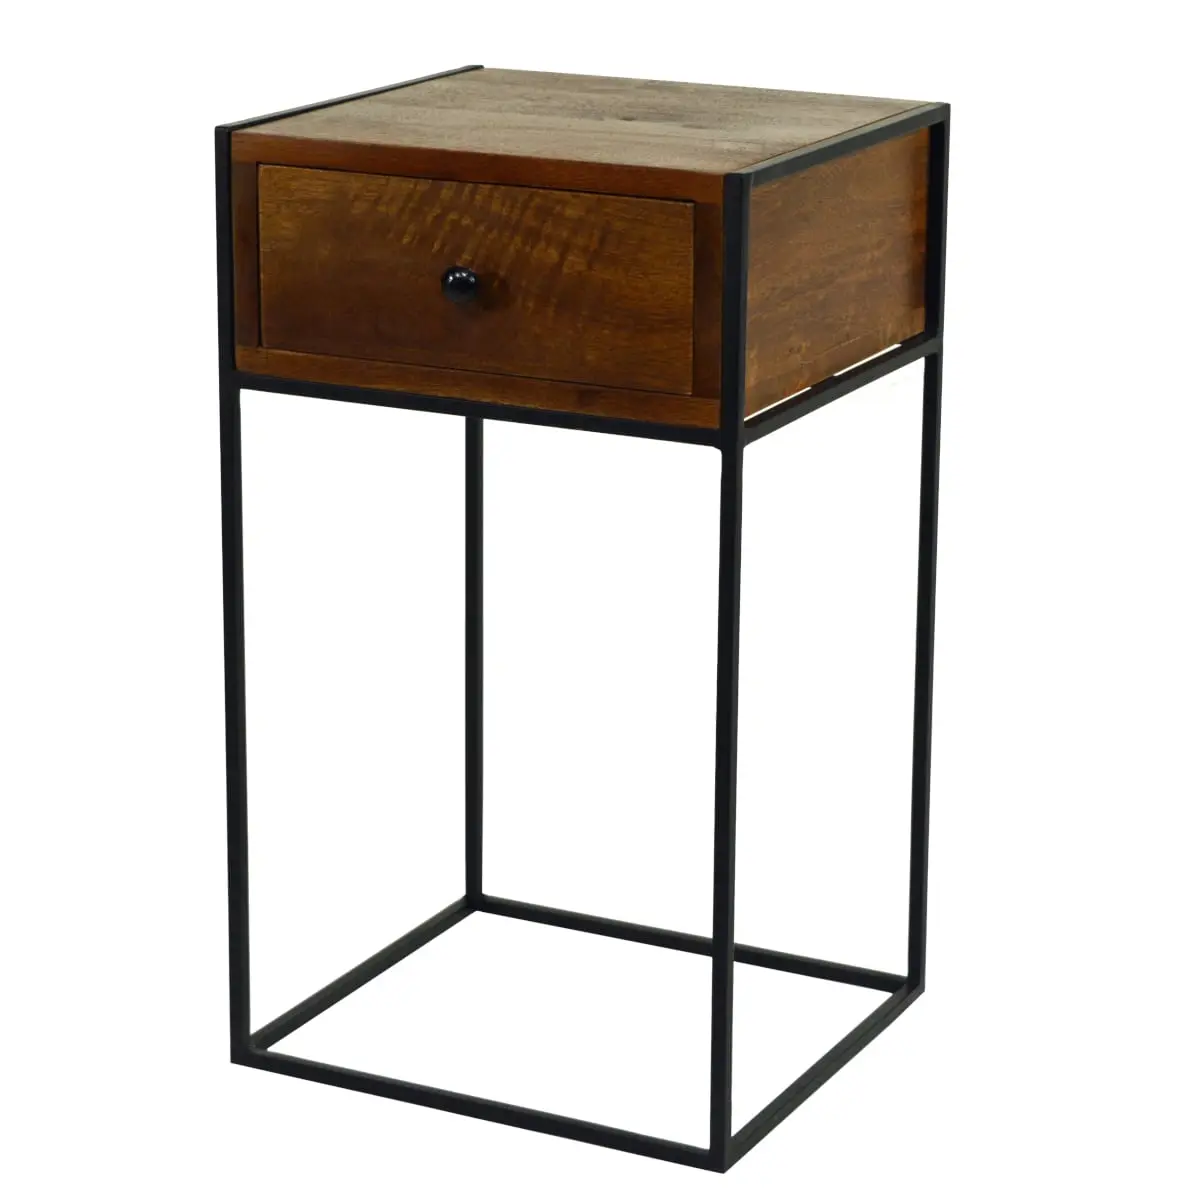 Nachttisch, Beistelltisch, Ablagentisch mit schublade, cubisches Design, klare Form, Holz Walnussbraun Dunkel, Gestell Eisen schwarz matt